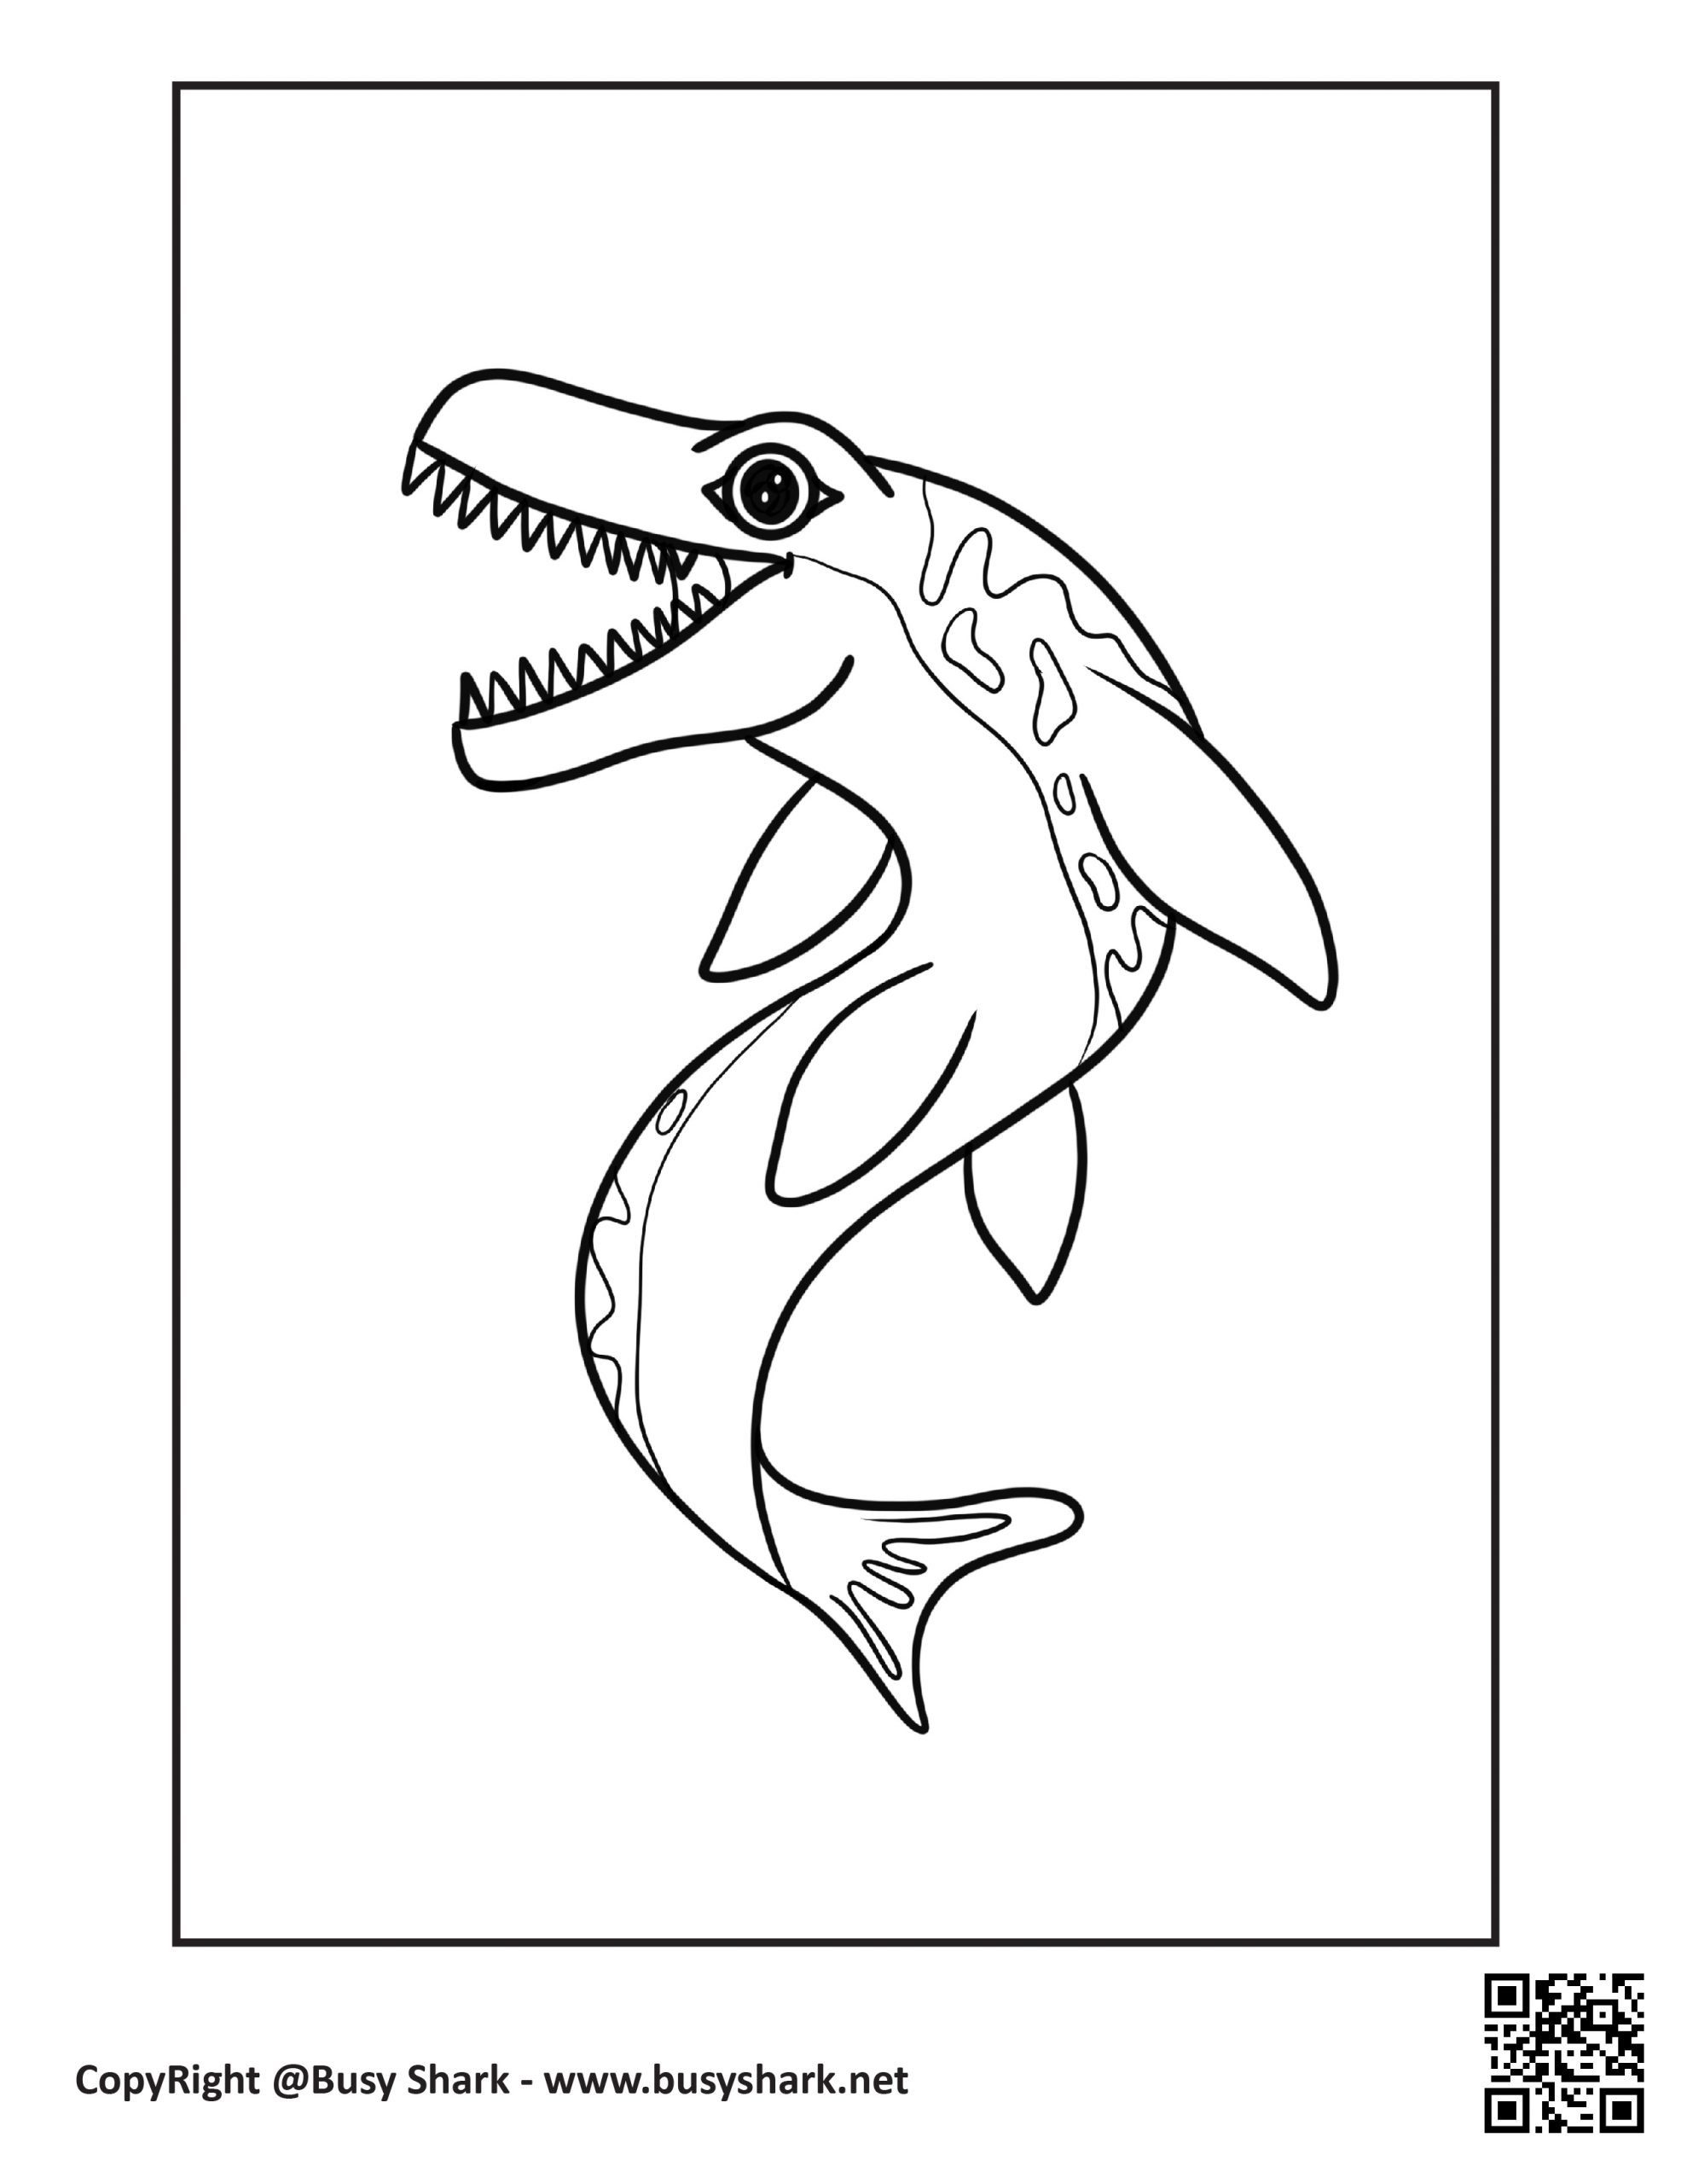 Mosasaurus coloring page free printable